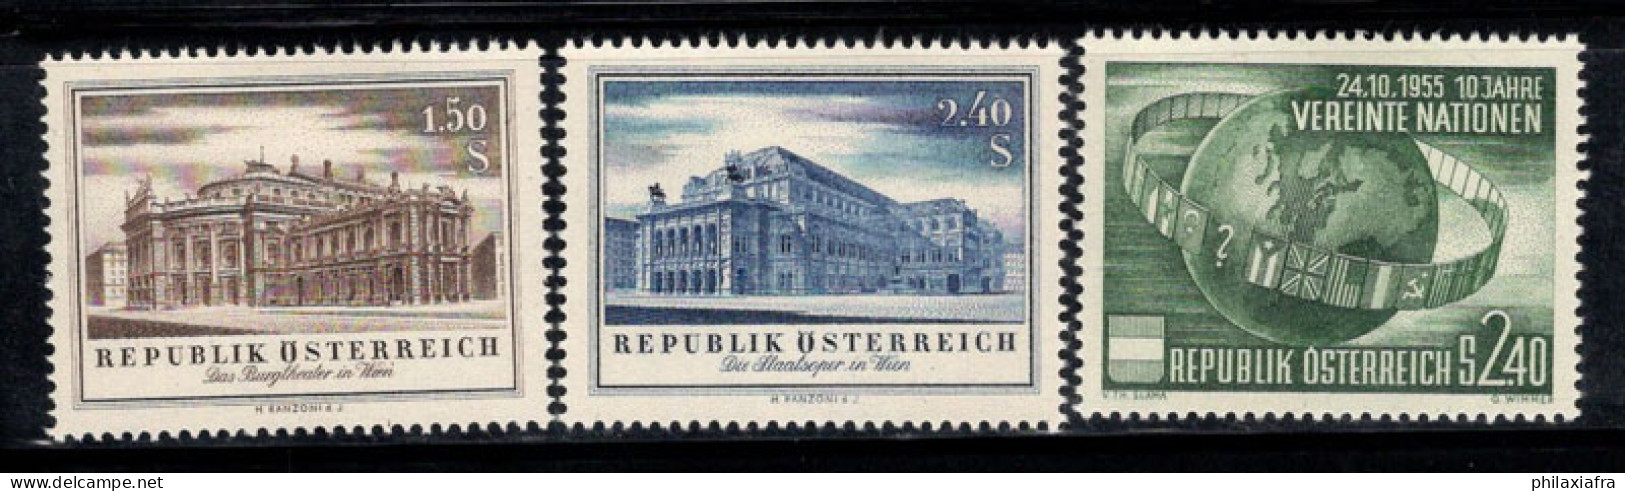 Autriche 1955 Mi. 1020-1022 Neuf * MH 100% ONU, THÉÂTRE, Opéra - Nuovi